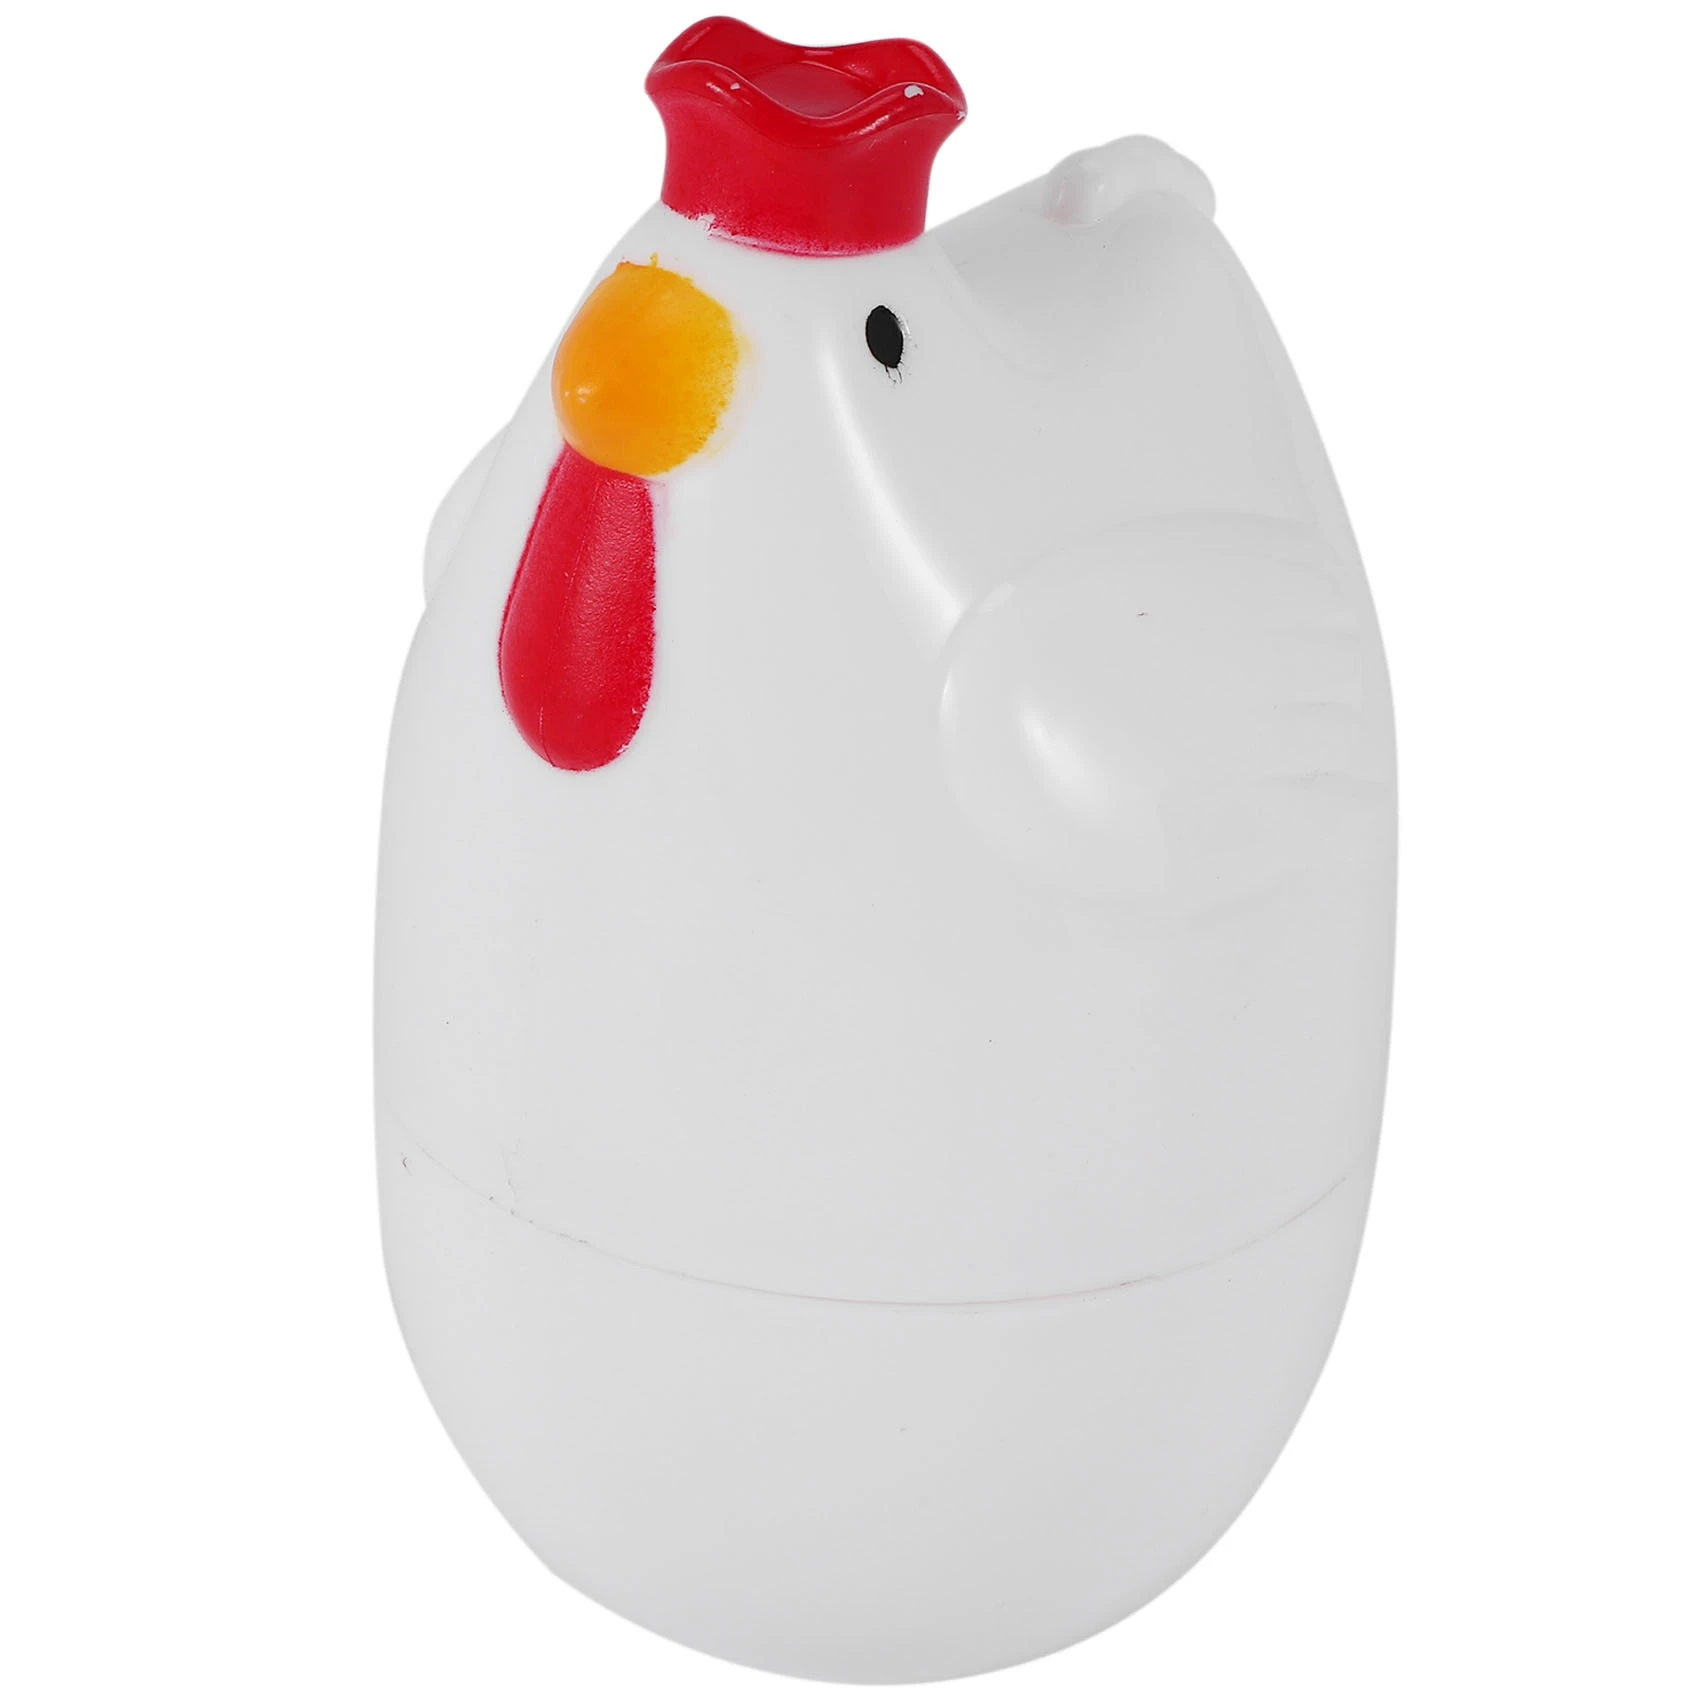 Пароварка для вареных яиц в форме цыпленка, 1 пароварка, пестик, микроволновая печь, яйцеварка, инструменты для приготовления пищи, кухонные гаджеты, аксессуары, инструменты